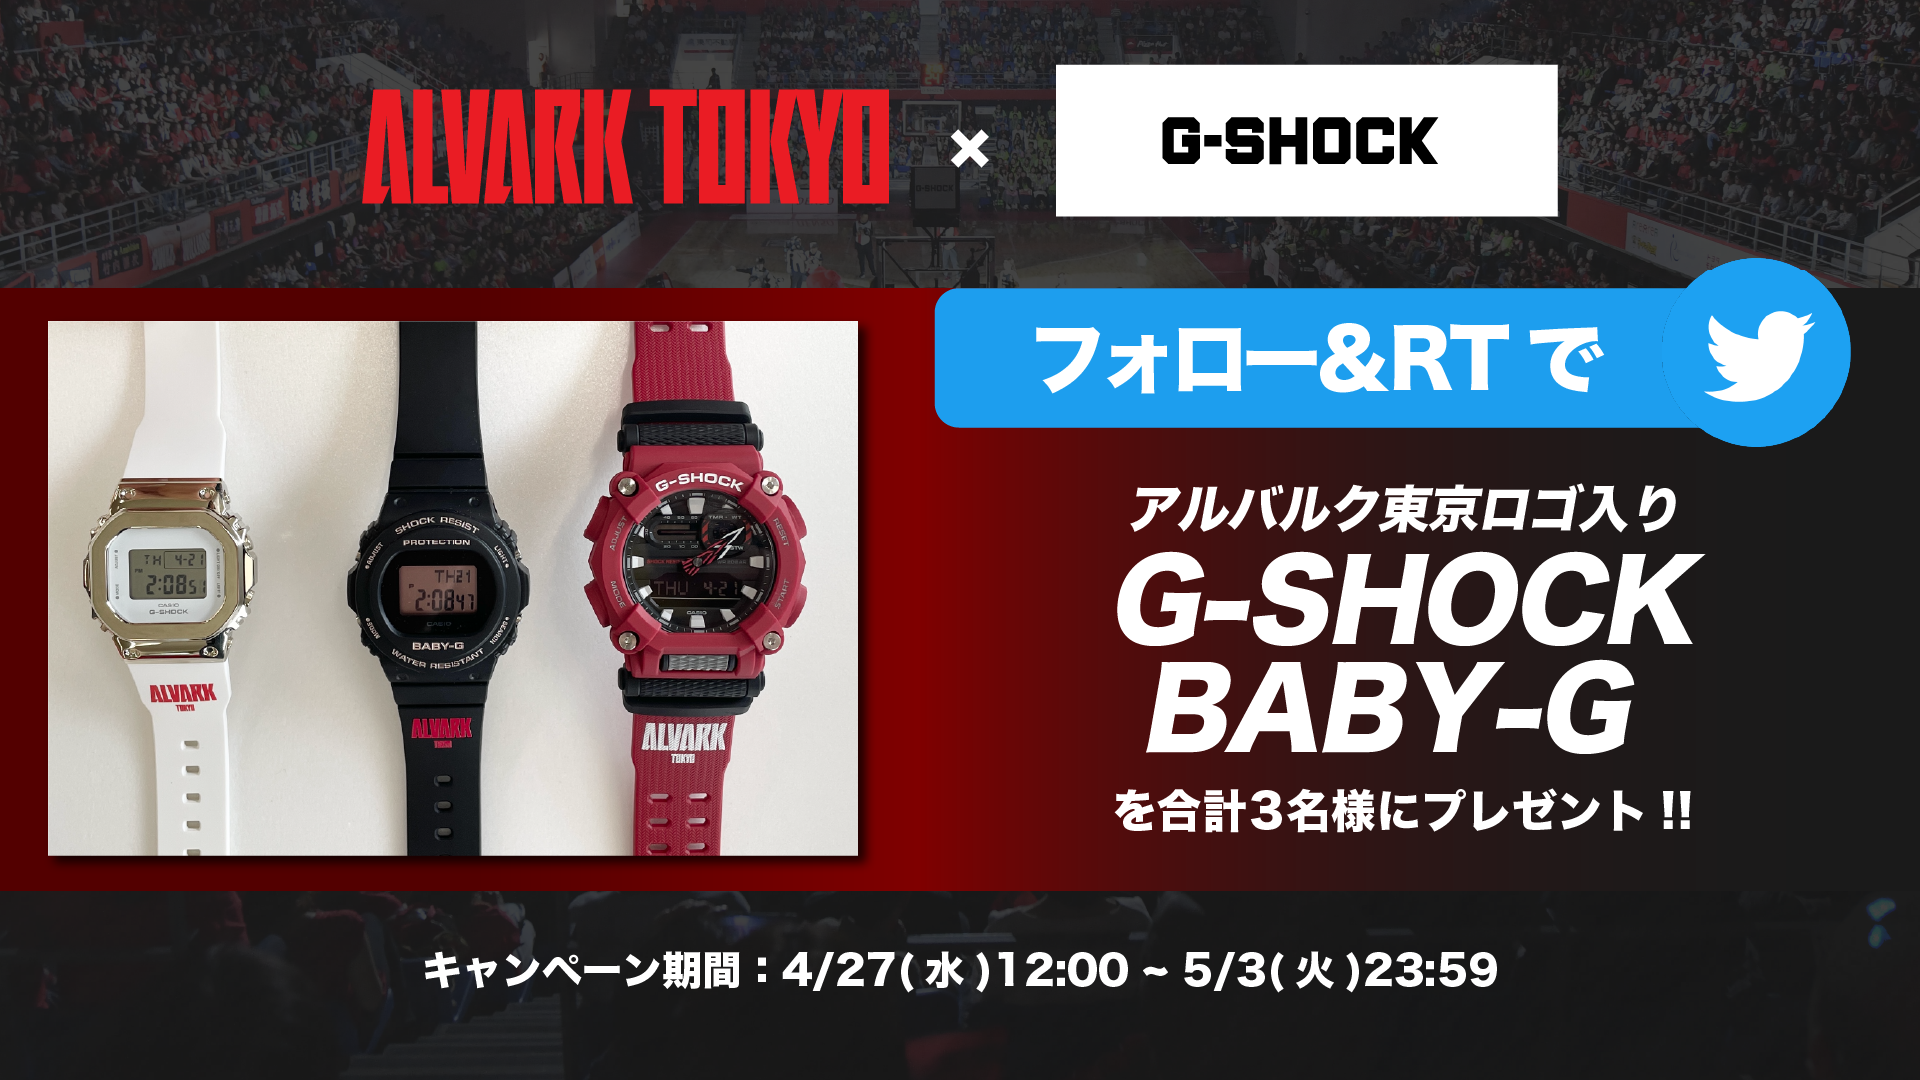 BリーグG-SHOCK アルバルク東京 モデル